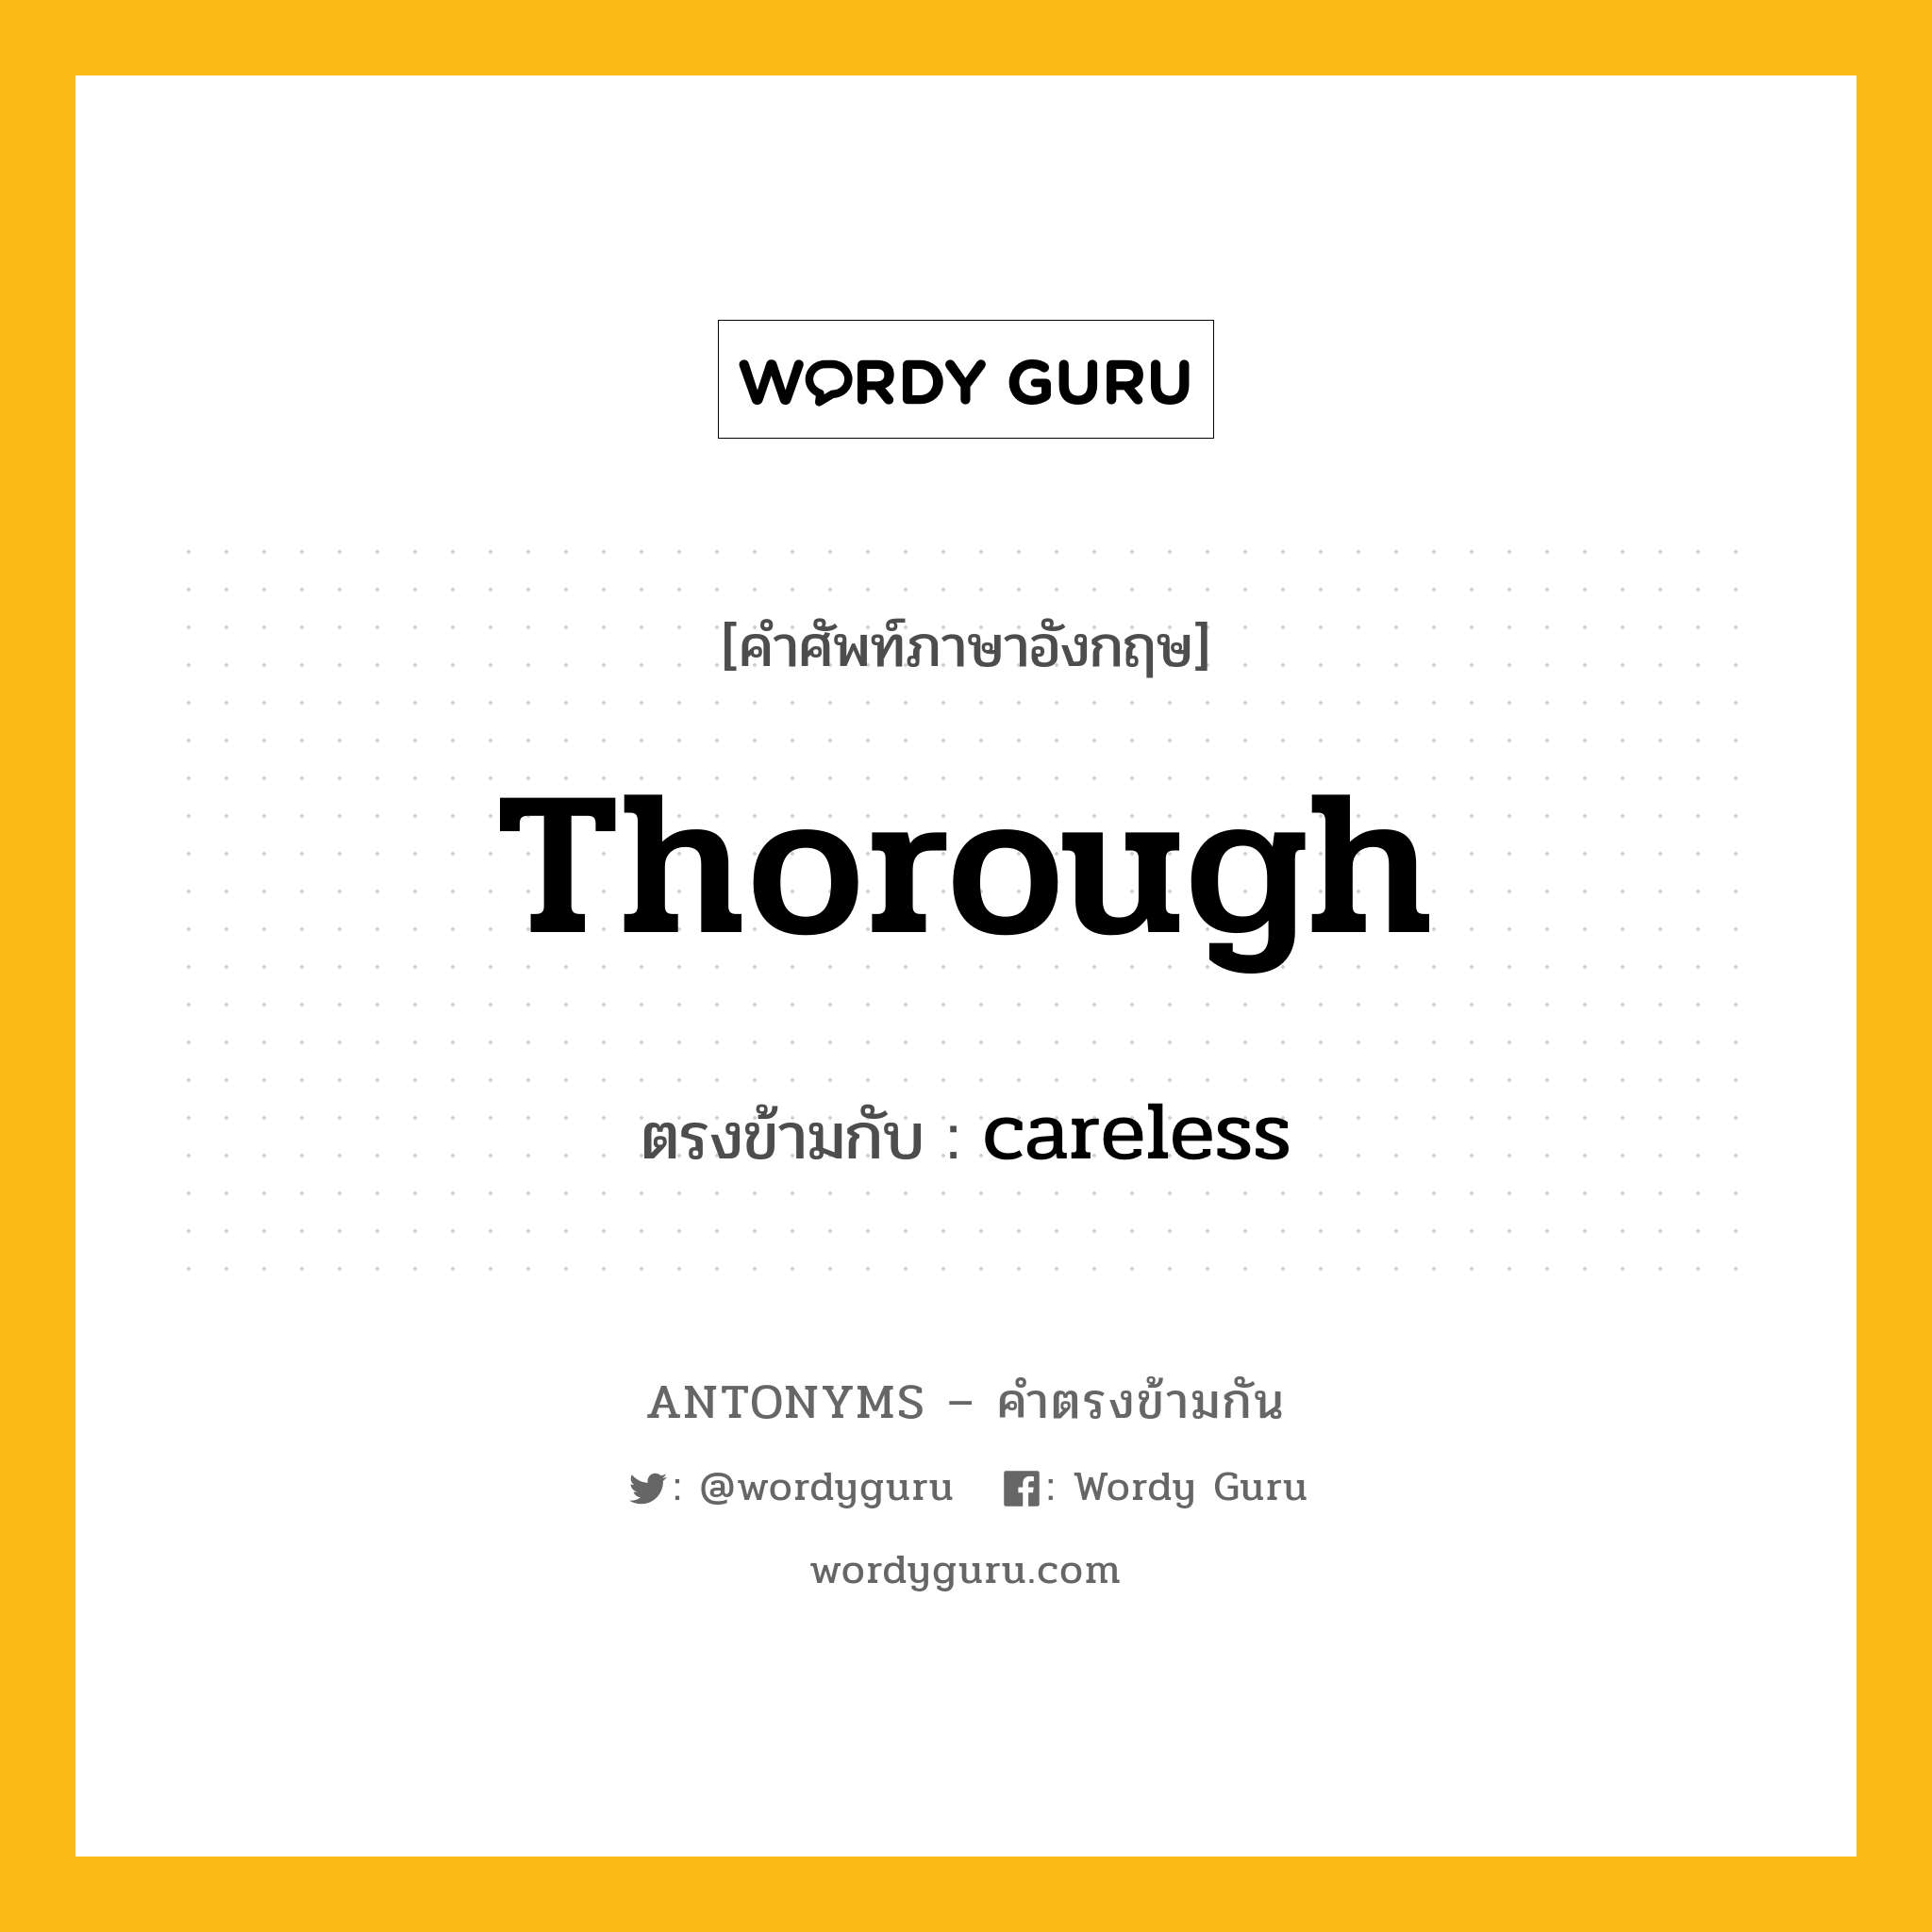 thorough เป็นคำตรงข้ามกับคำไหนบ้าง?, คำศัพท์ภาษาอังกฤษ thorough ตรงข้ามกับ careless หมวด careless